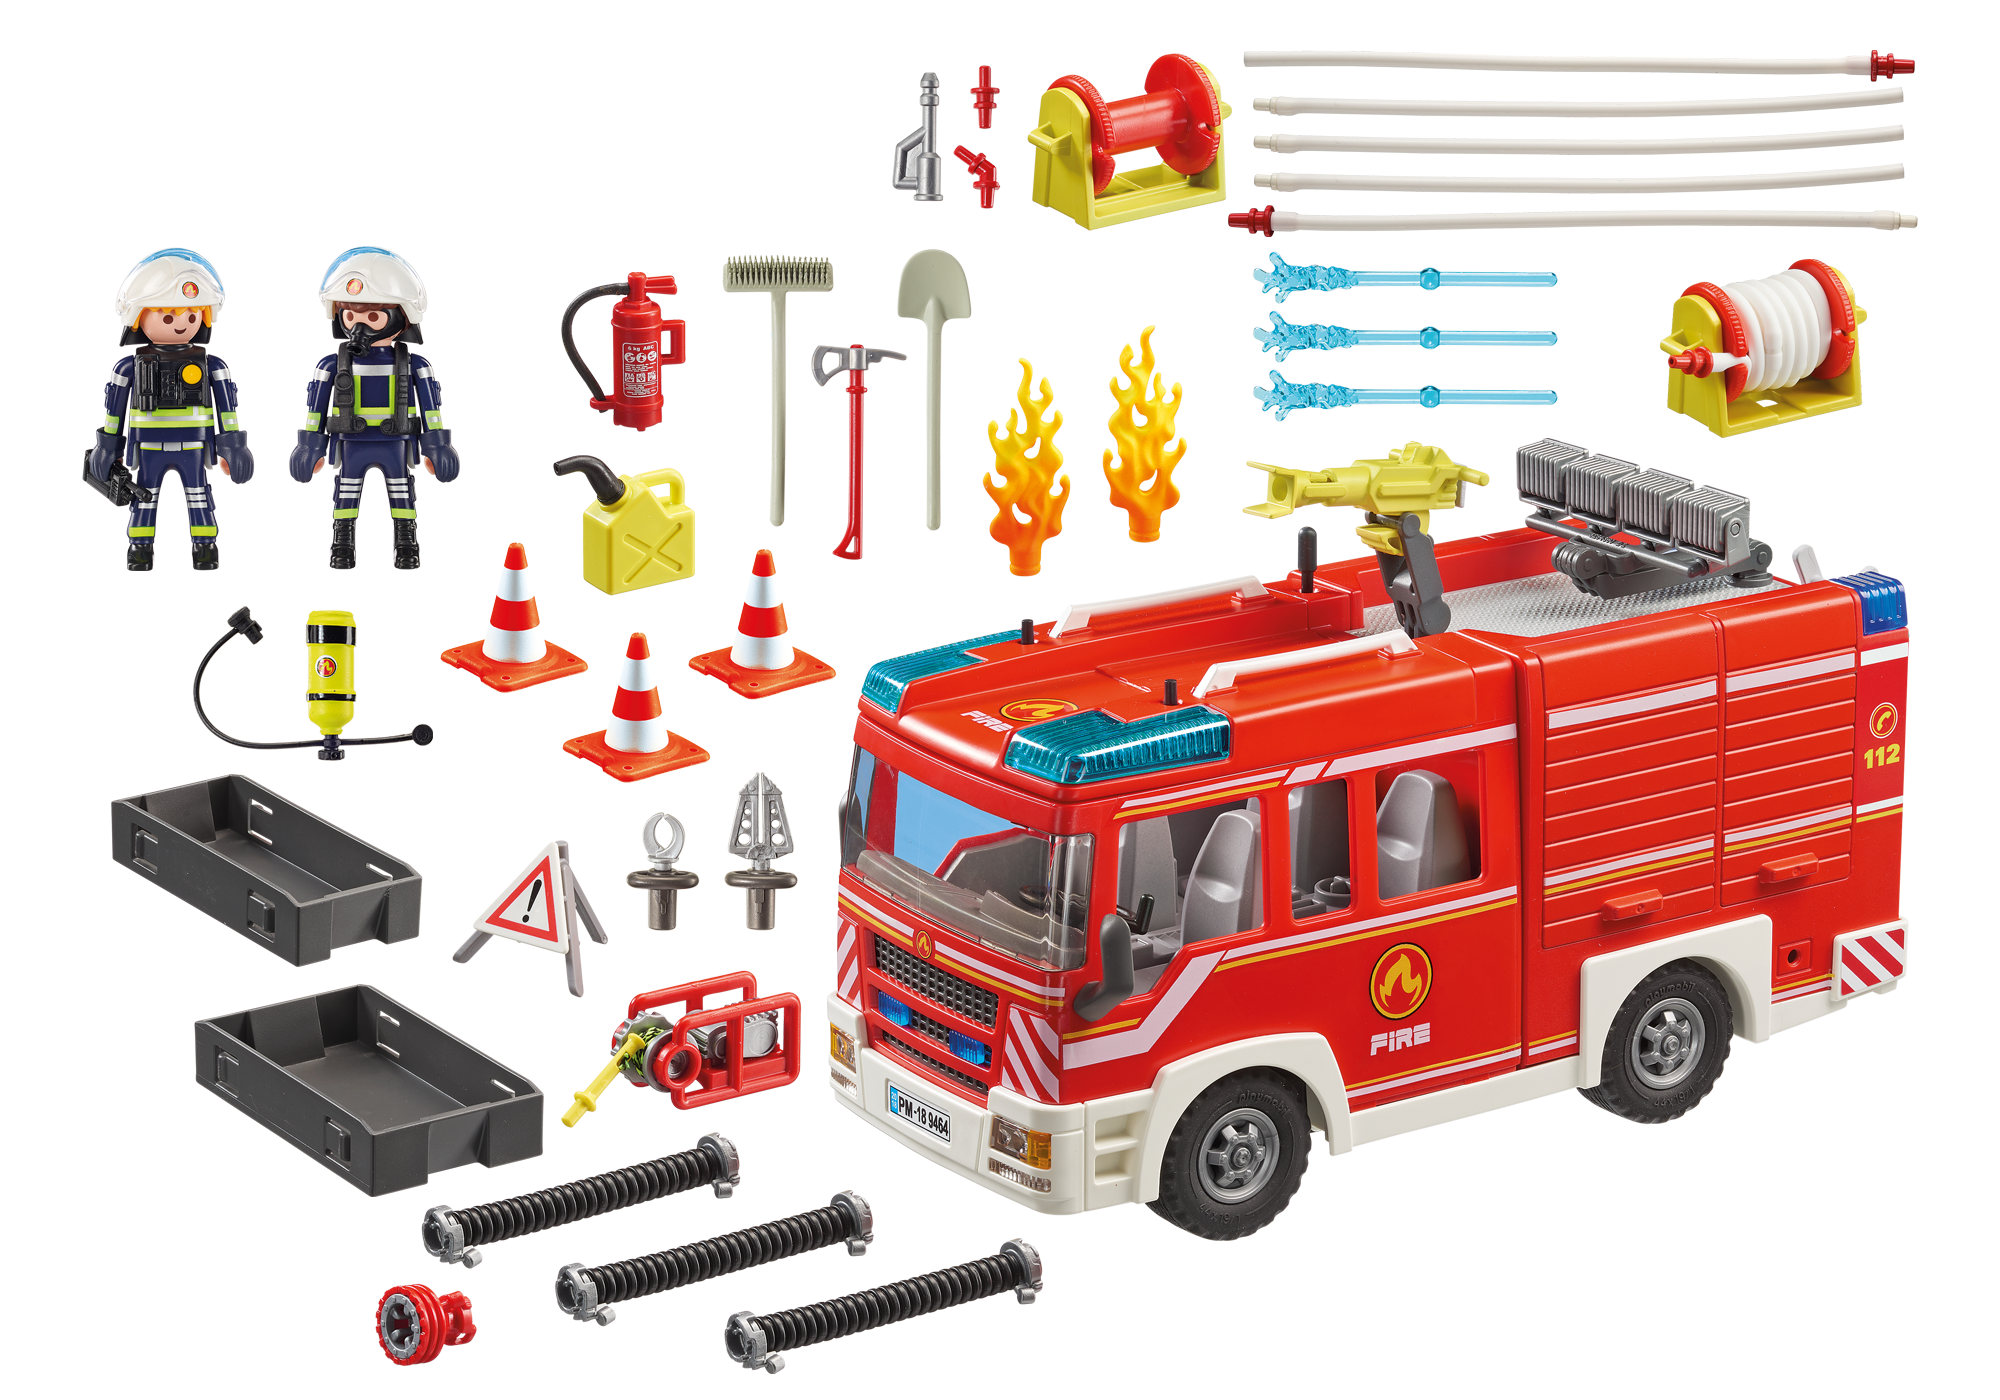 playmobil fire brigade set